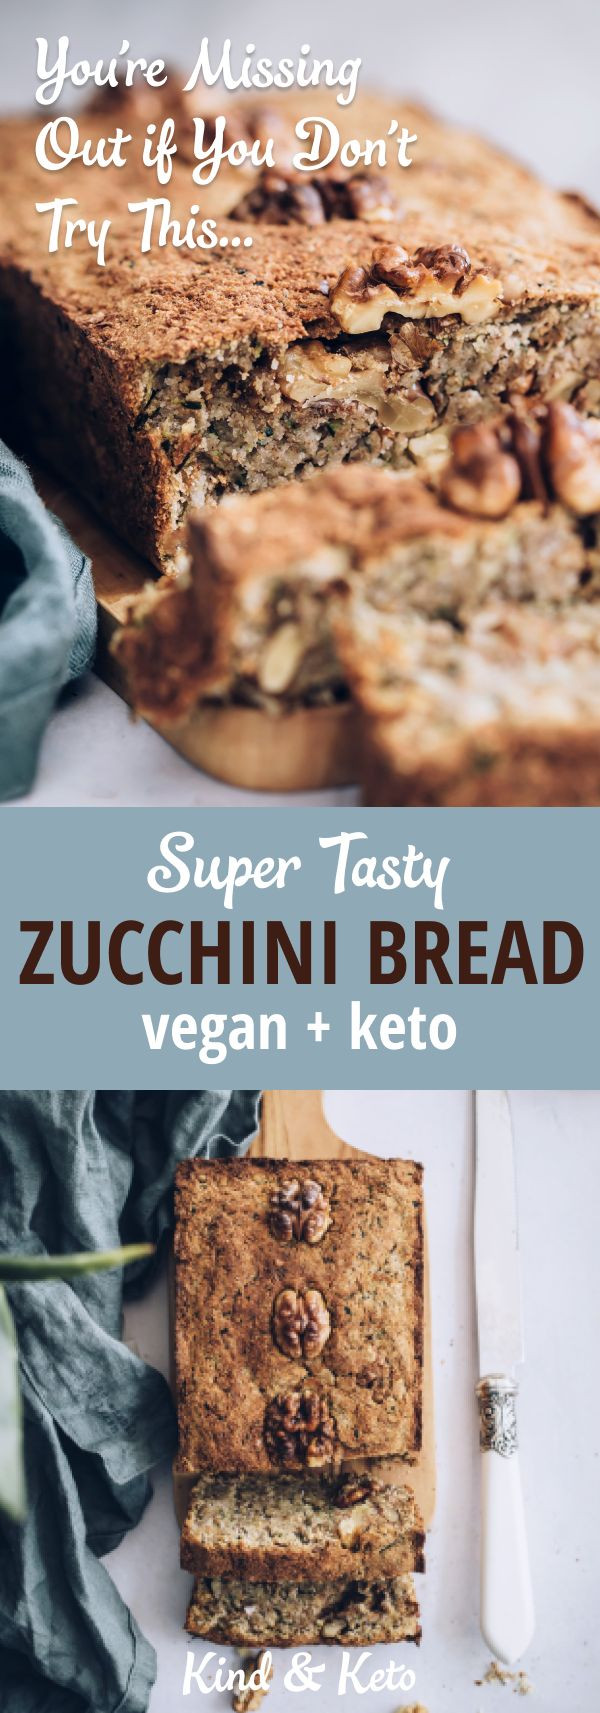 Easy Vegan Keto Bread
 Easy Bake Vegan Keto Zucchini Bread Recipe